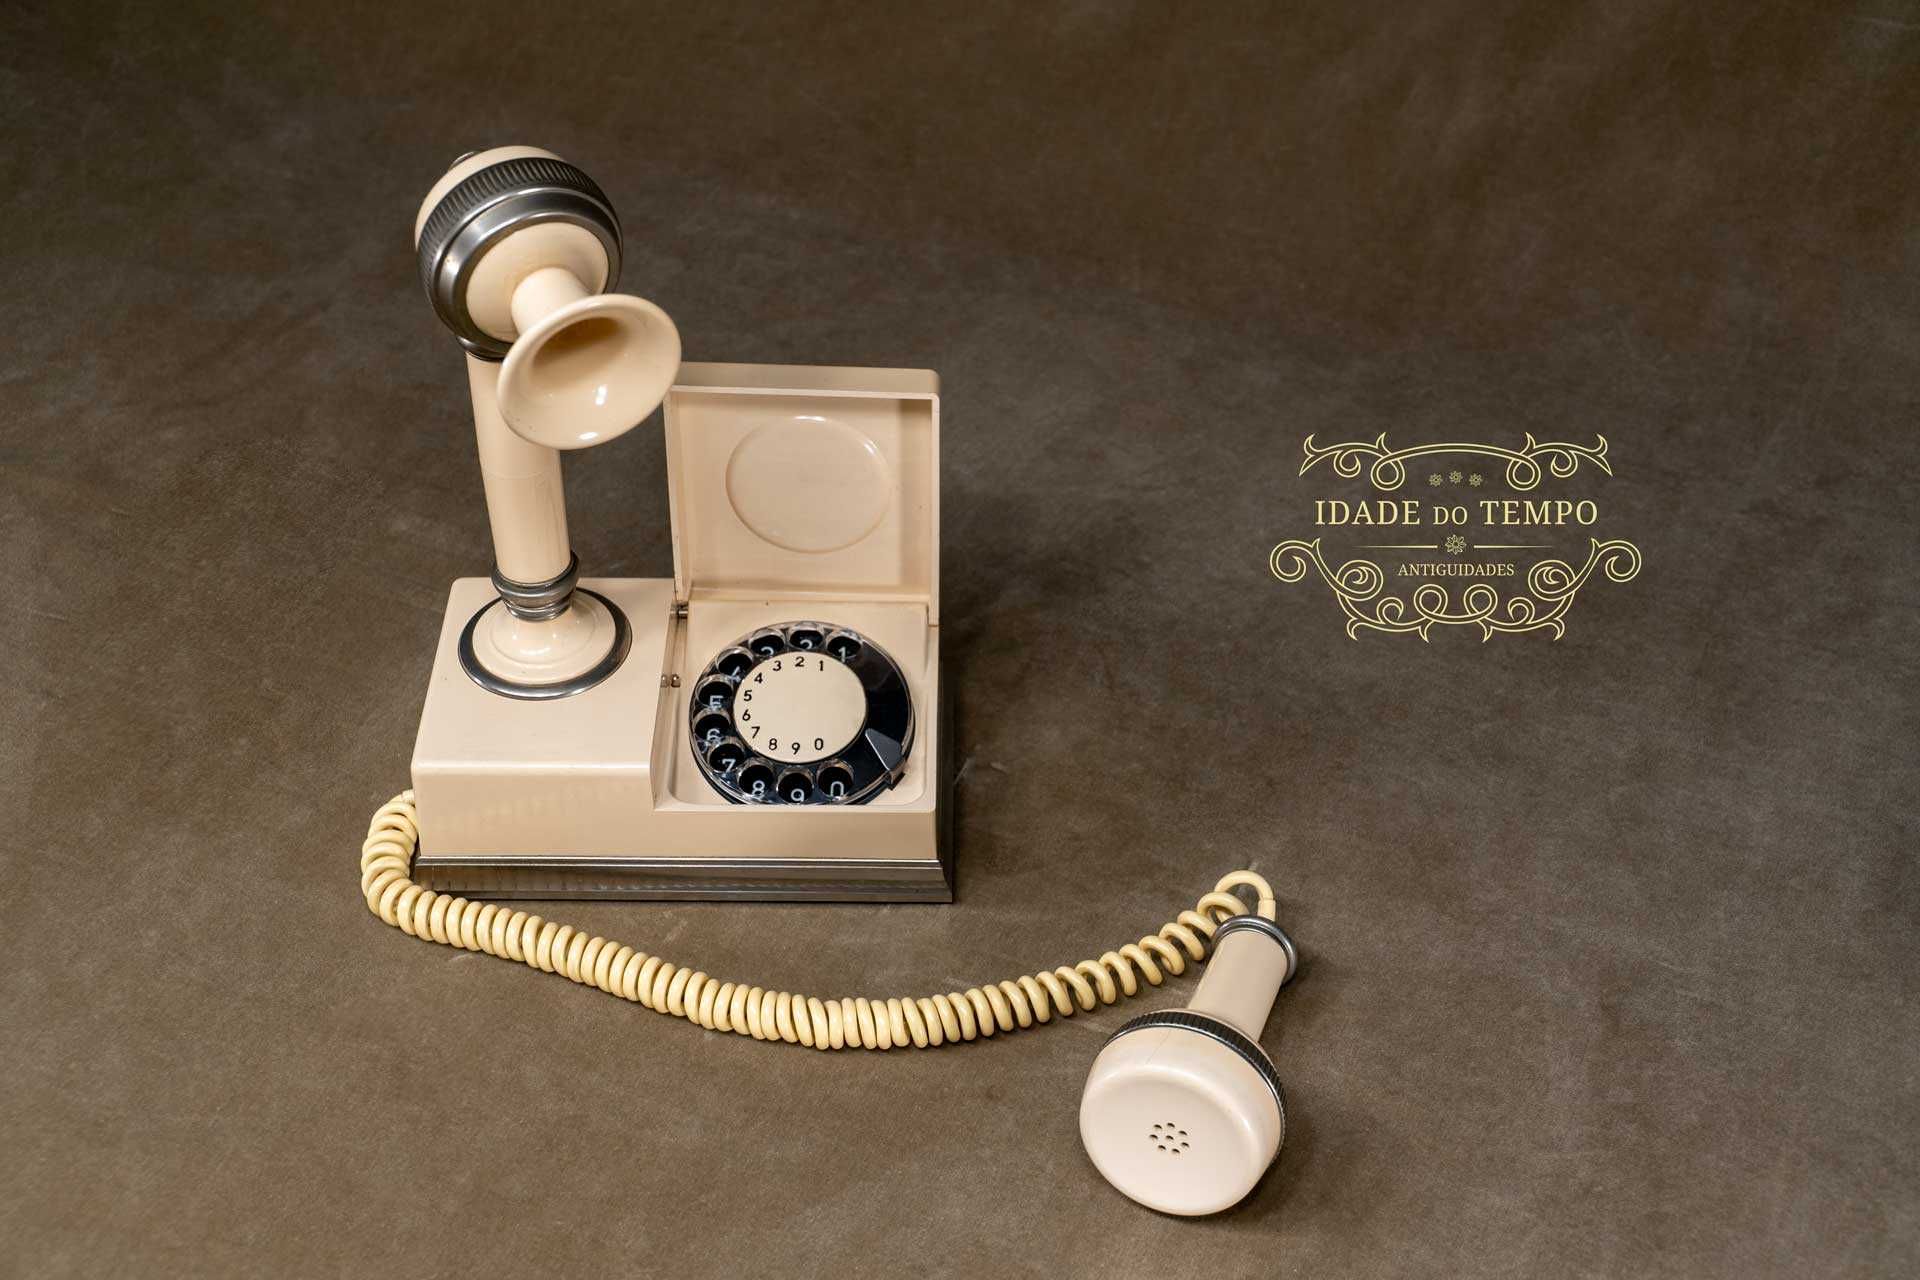 Telefone da década de 1920